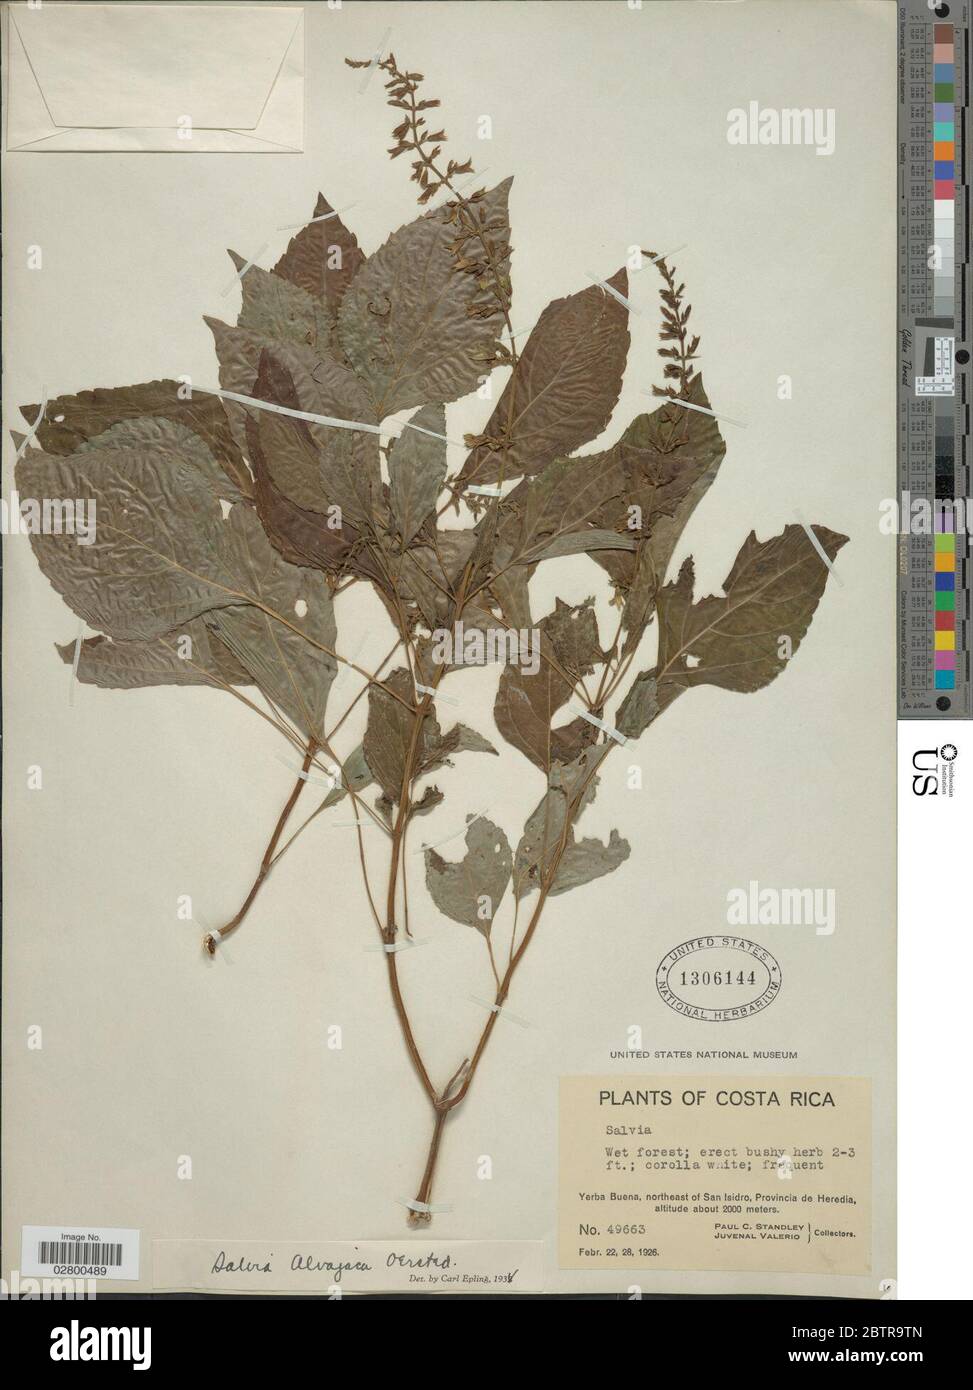 Salvia alvajaca Oerst. Stock Photo